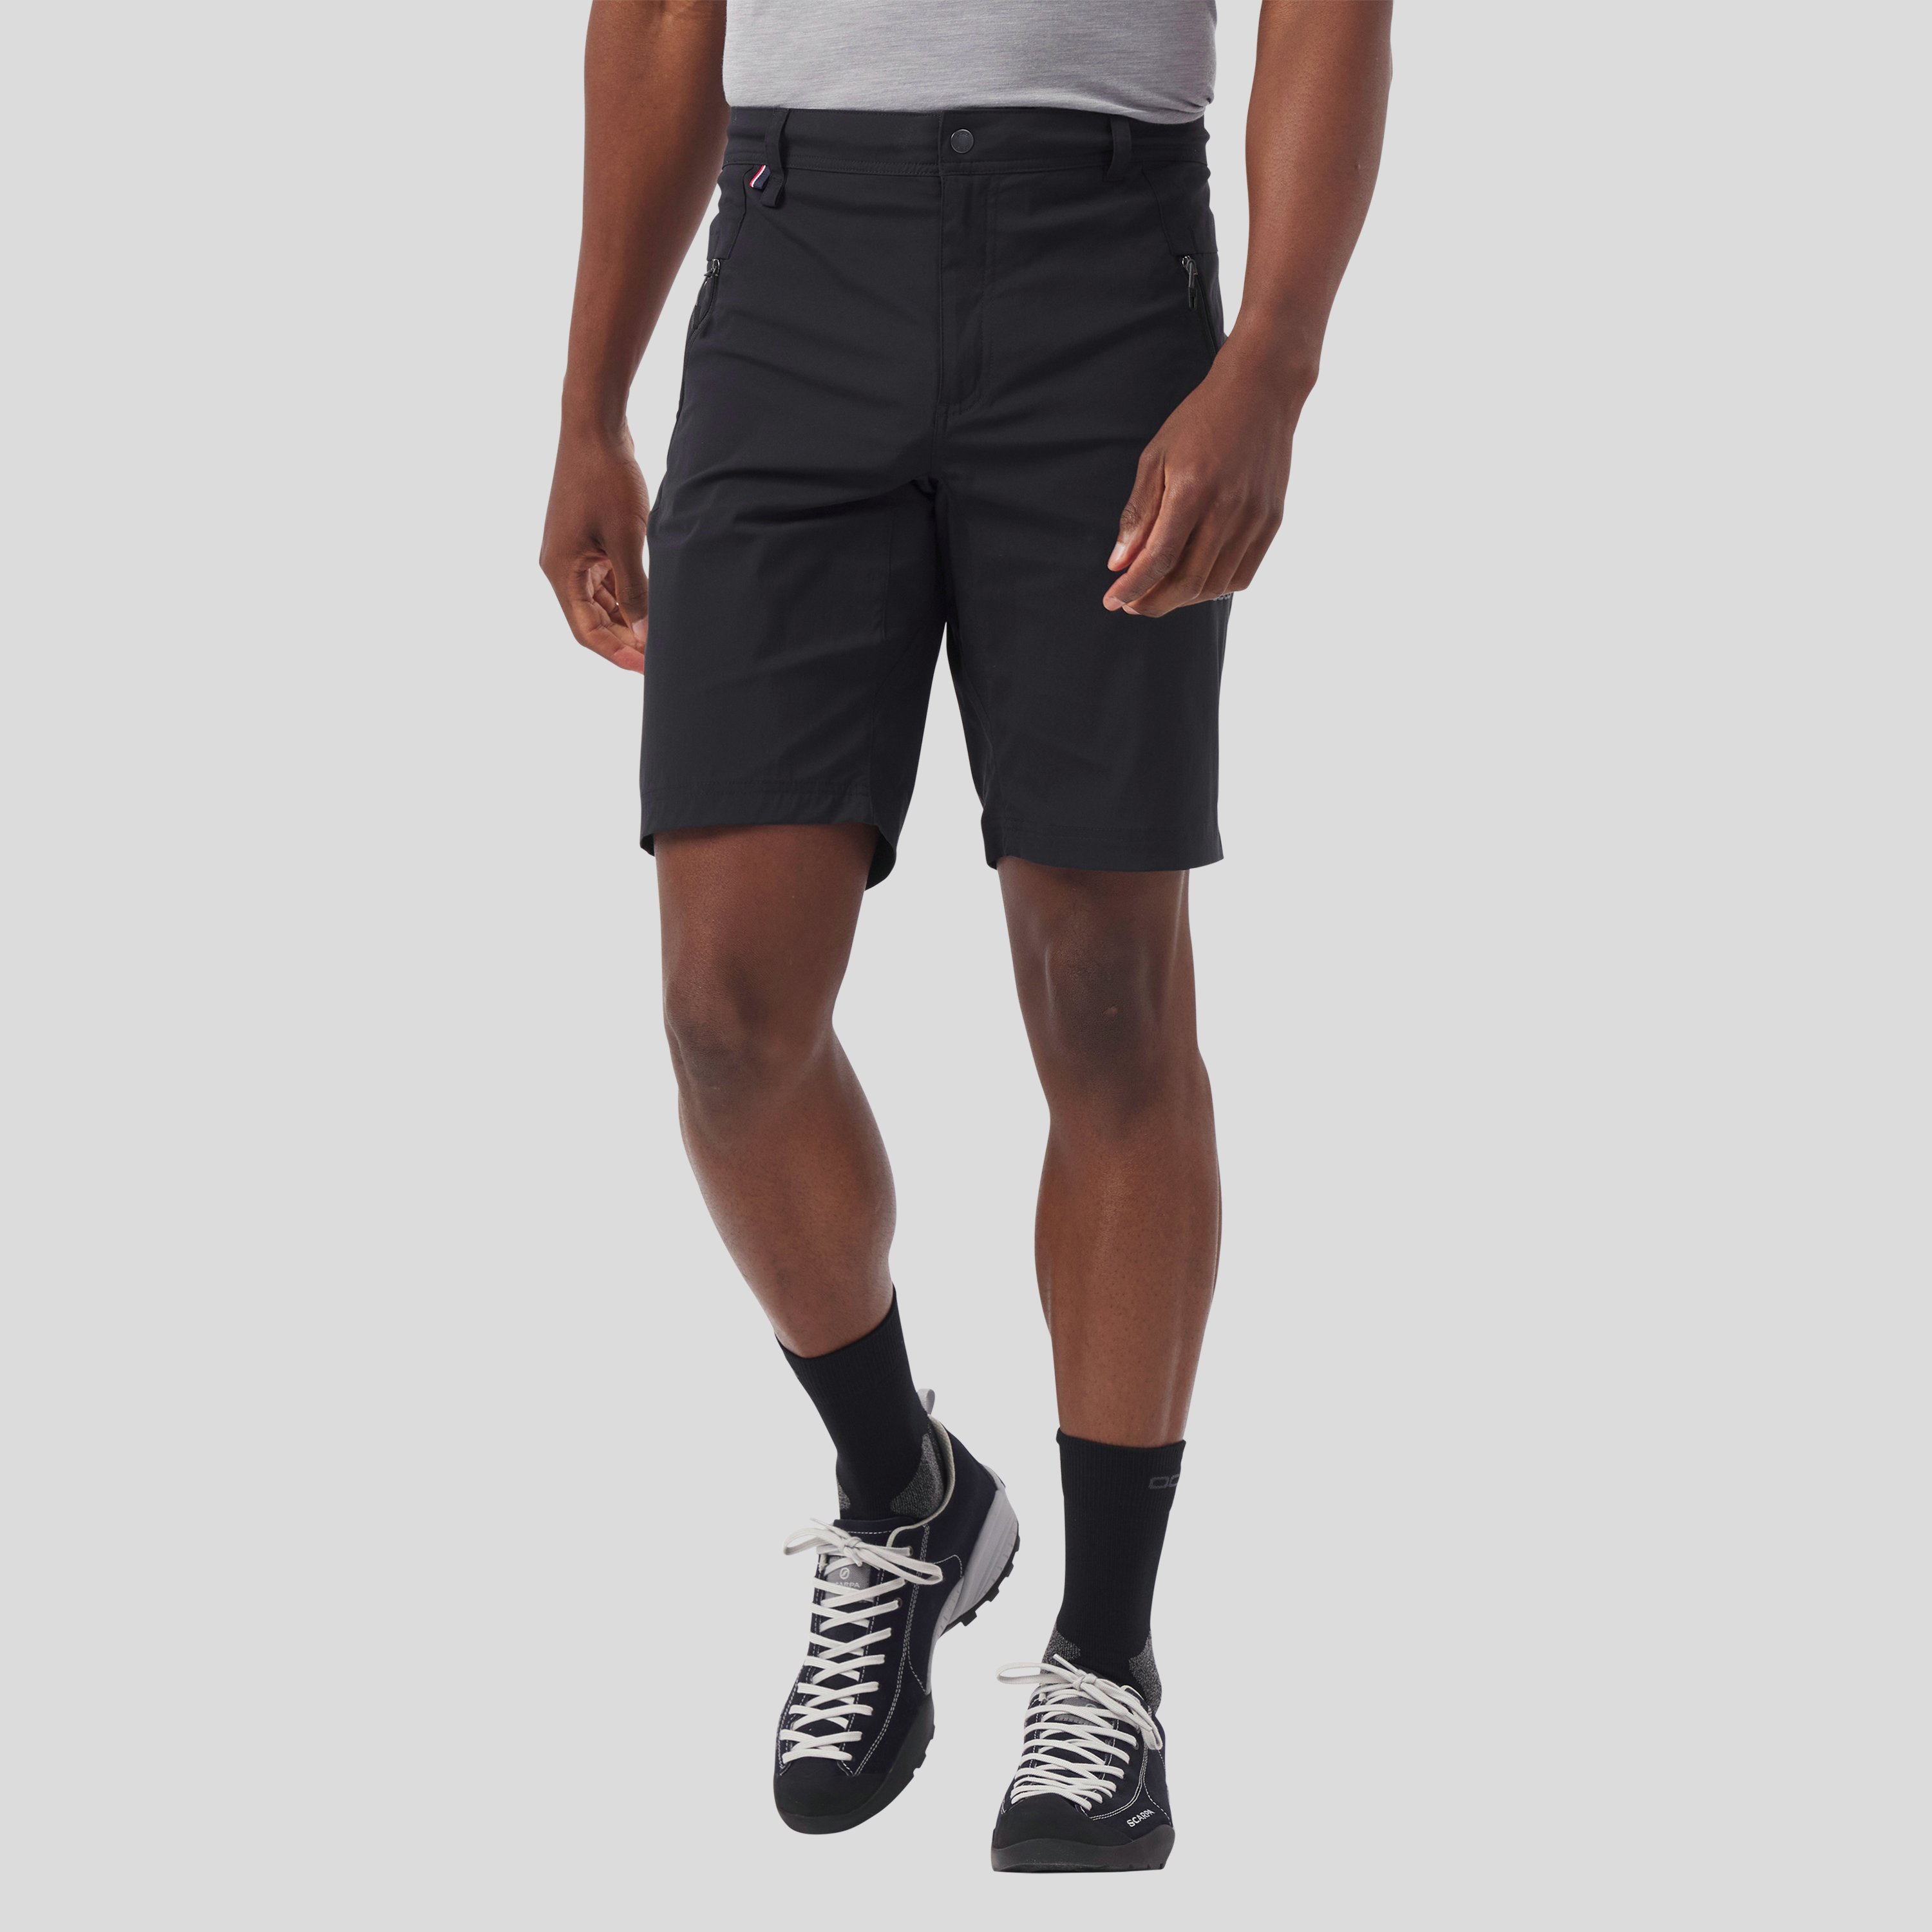 ODLO Wedgemount Shorts für Herren, 52, schwarz